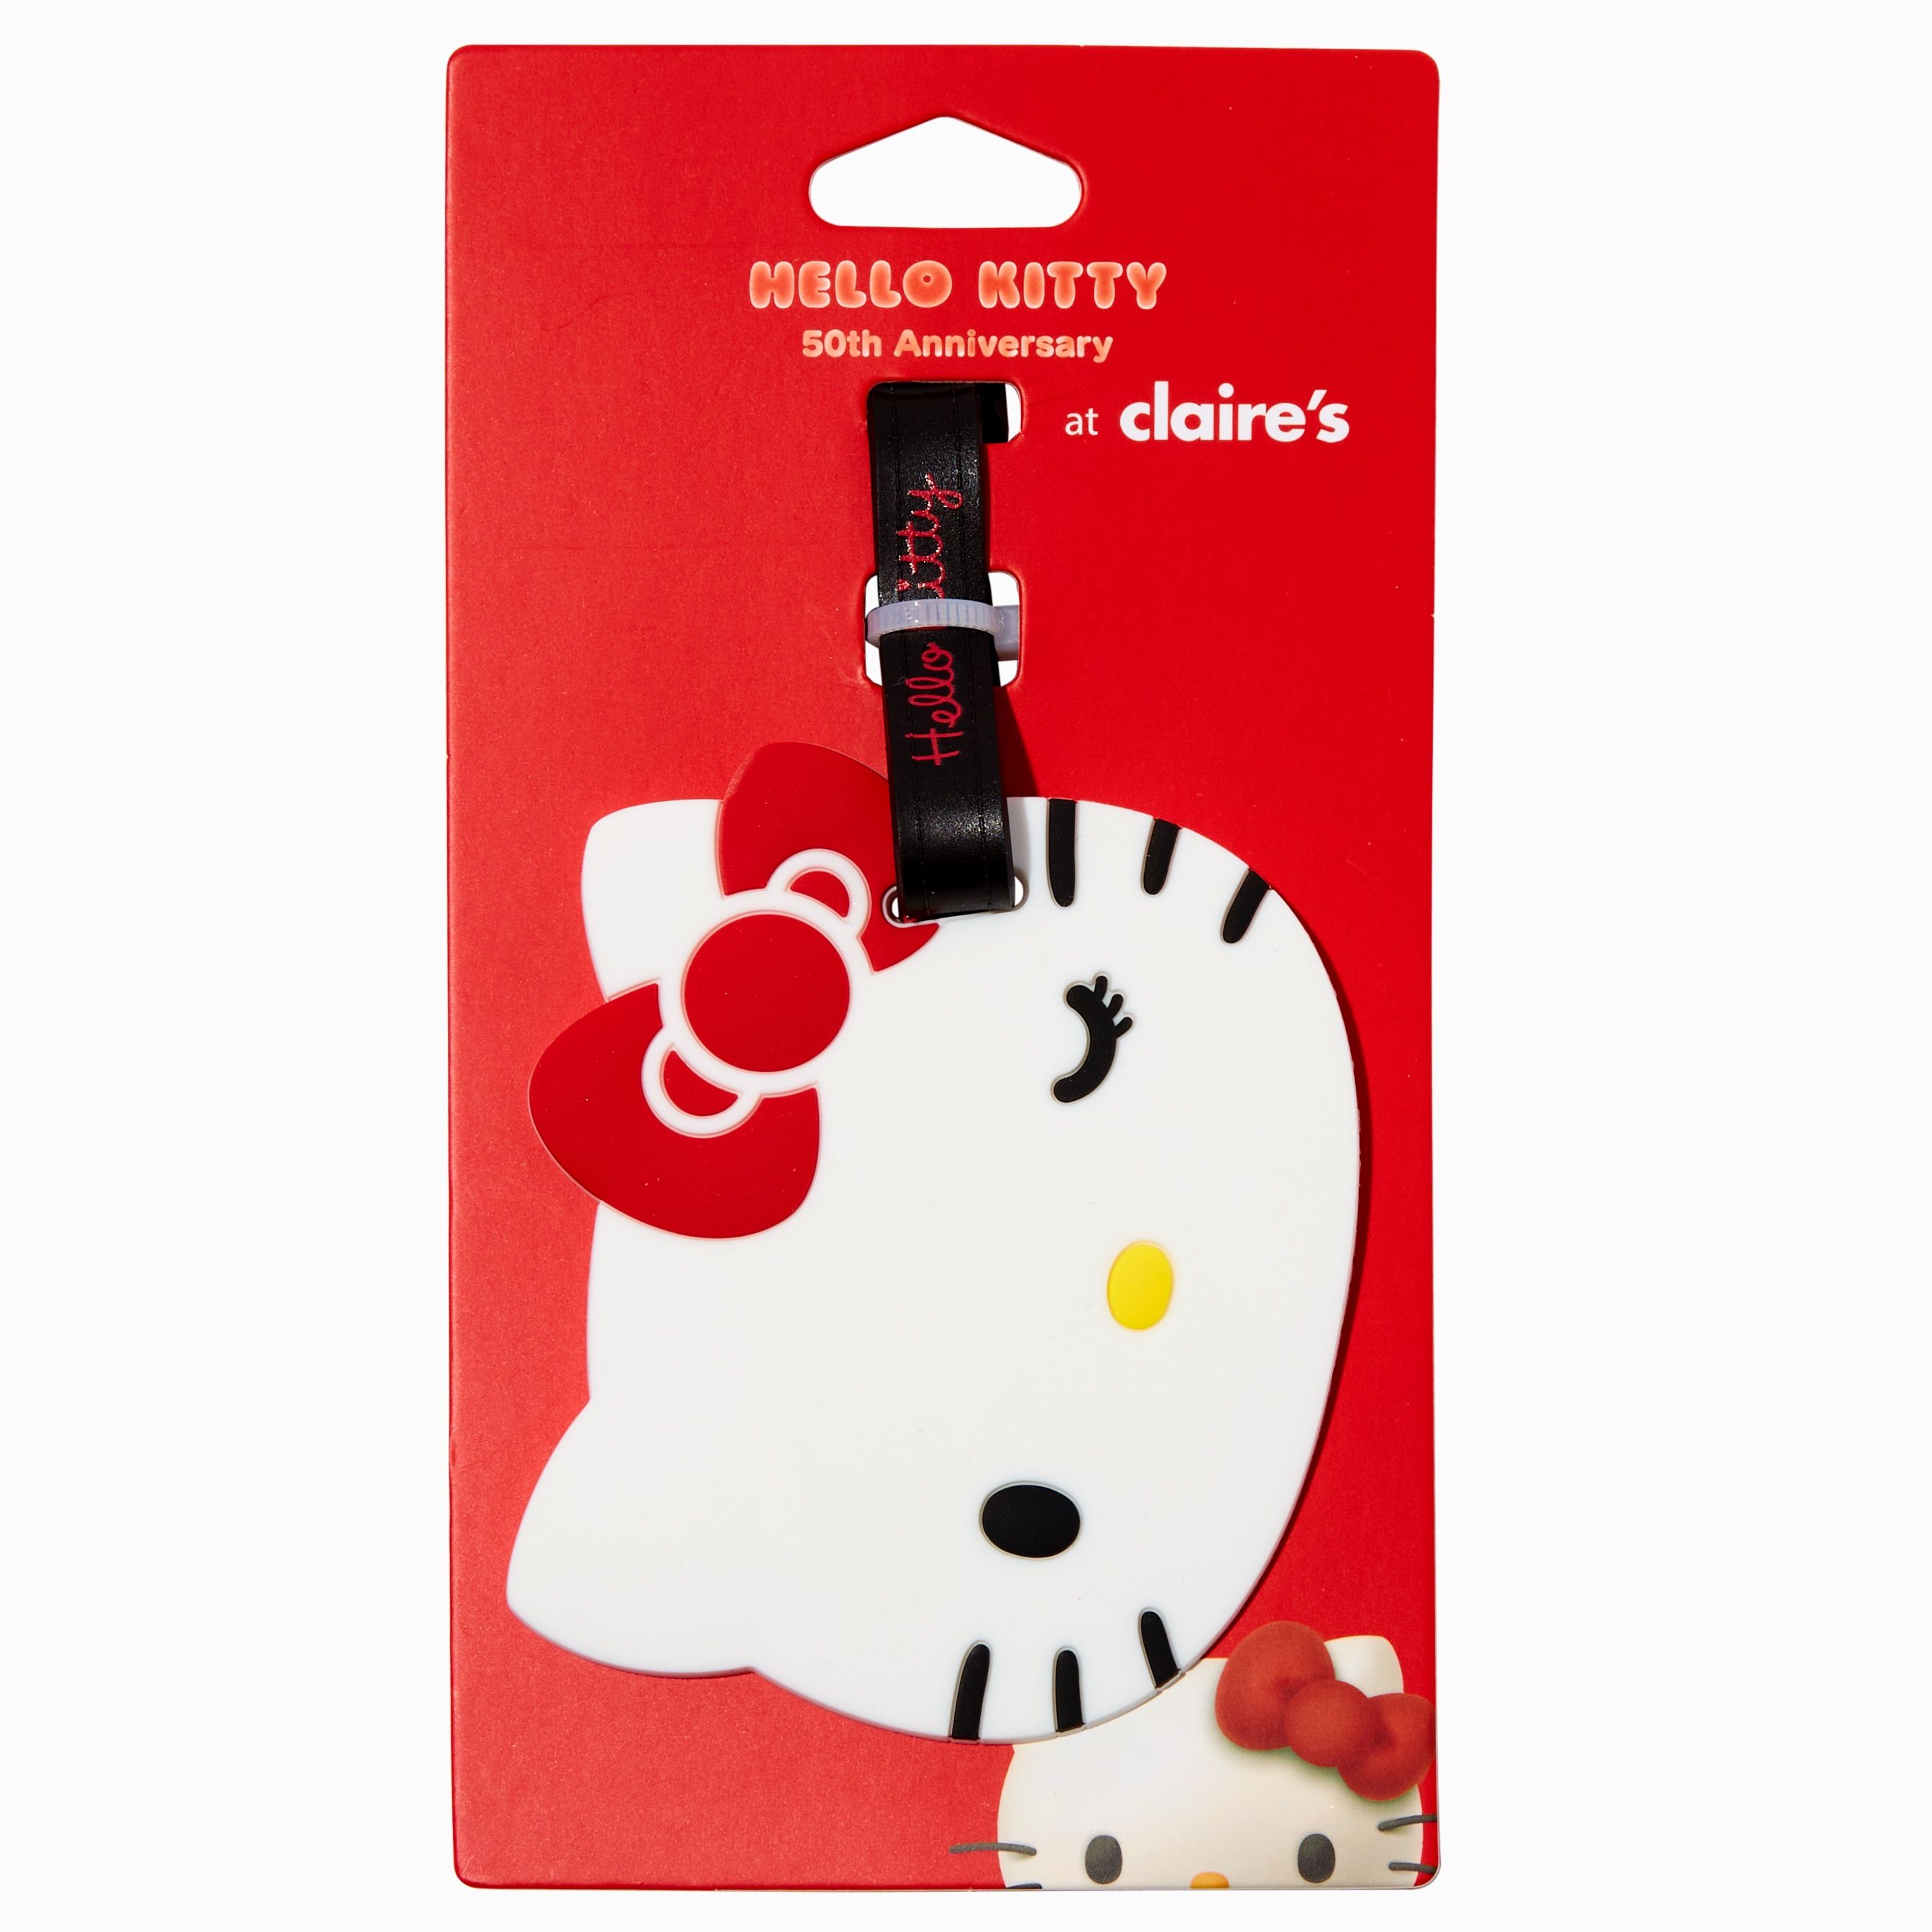 Hello Kitty от Sanrio получает эксклюзивный выпуск одежды и аксессуаров Claire's